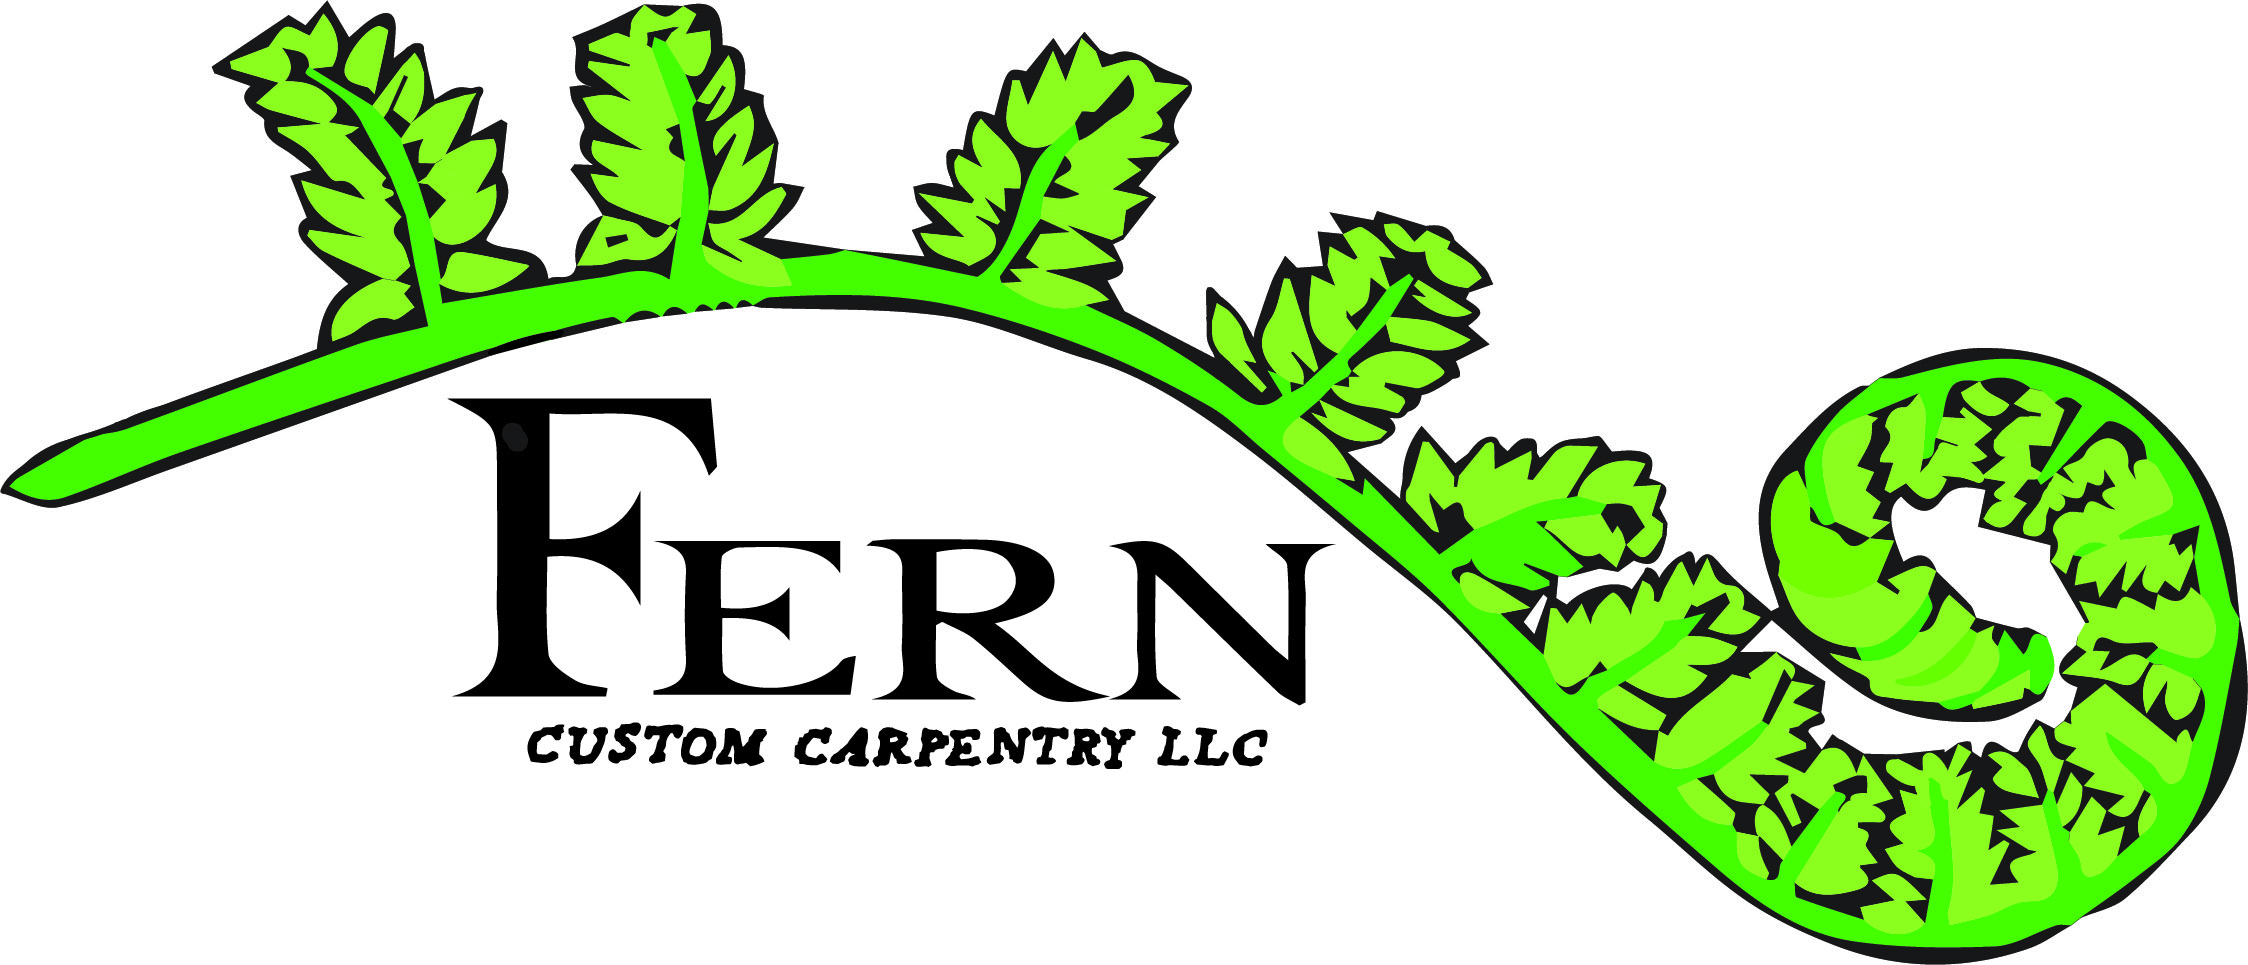 Fern Custom Carpentry, LLC Logo